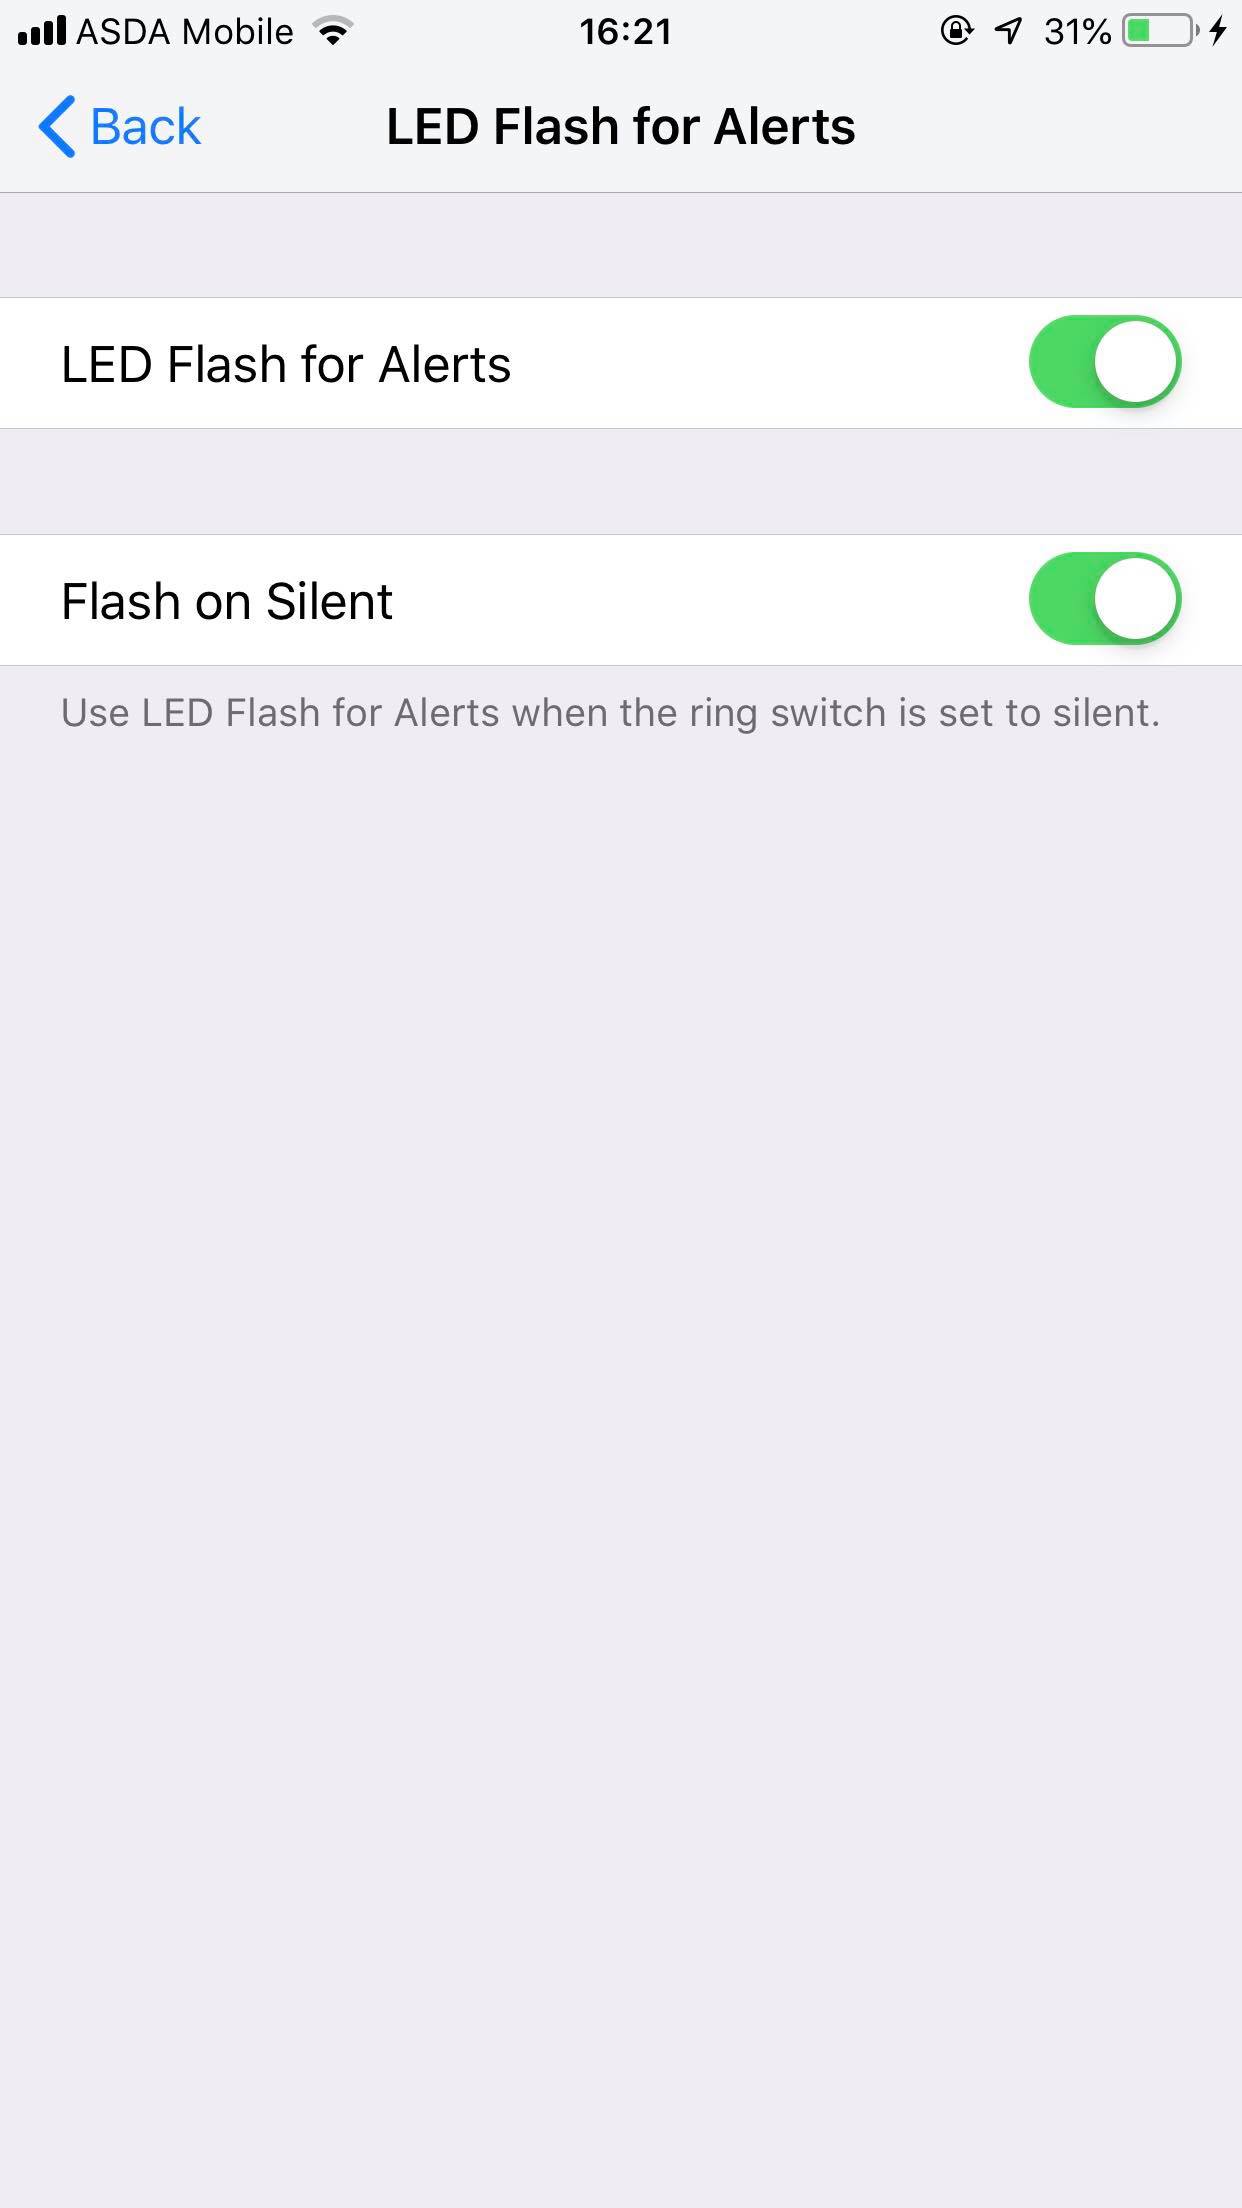 El flash LED fijo no funciona en el iPhone 3